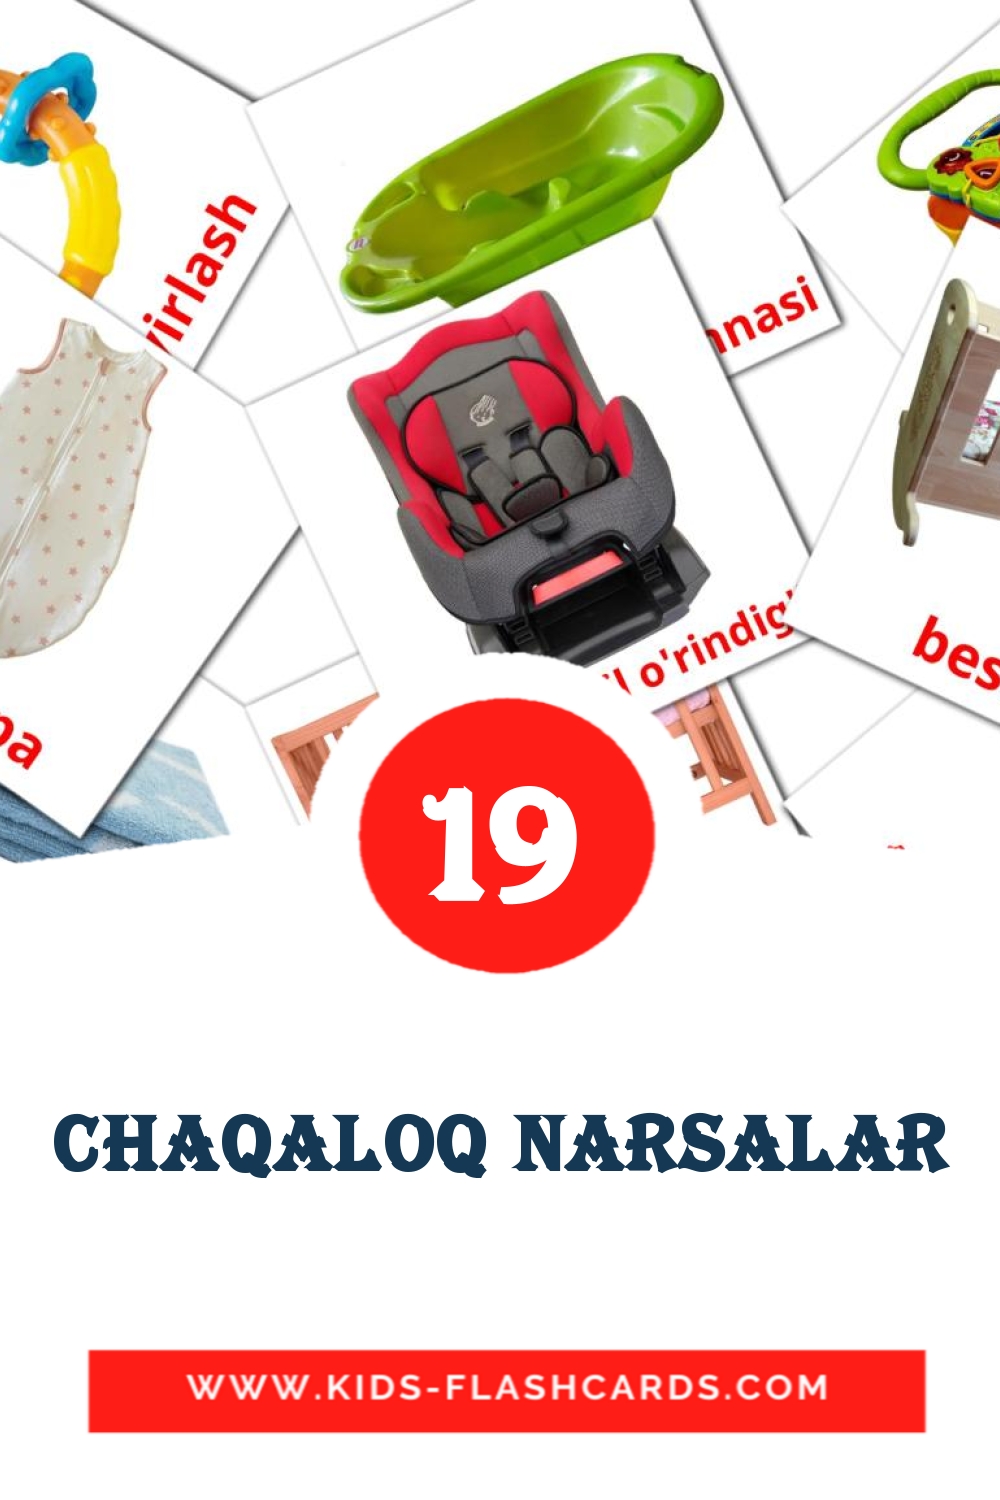 Chaqaloq narsalar на узбекском для Детского Сада (19 карточек)